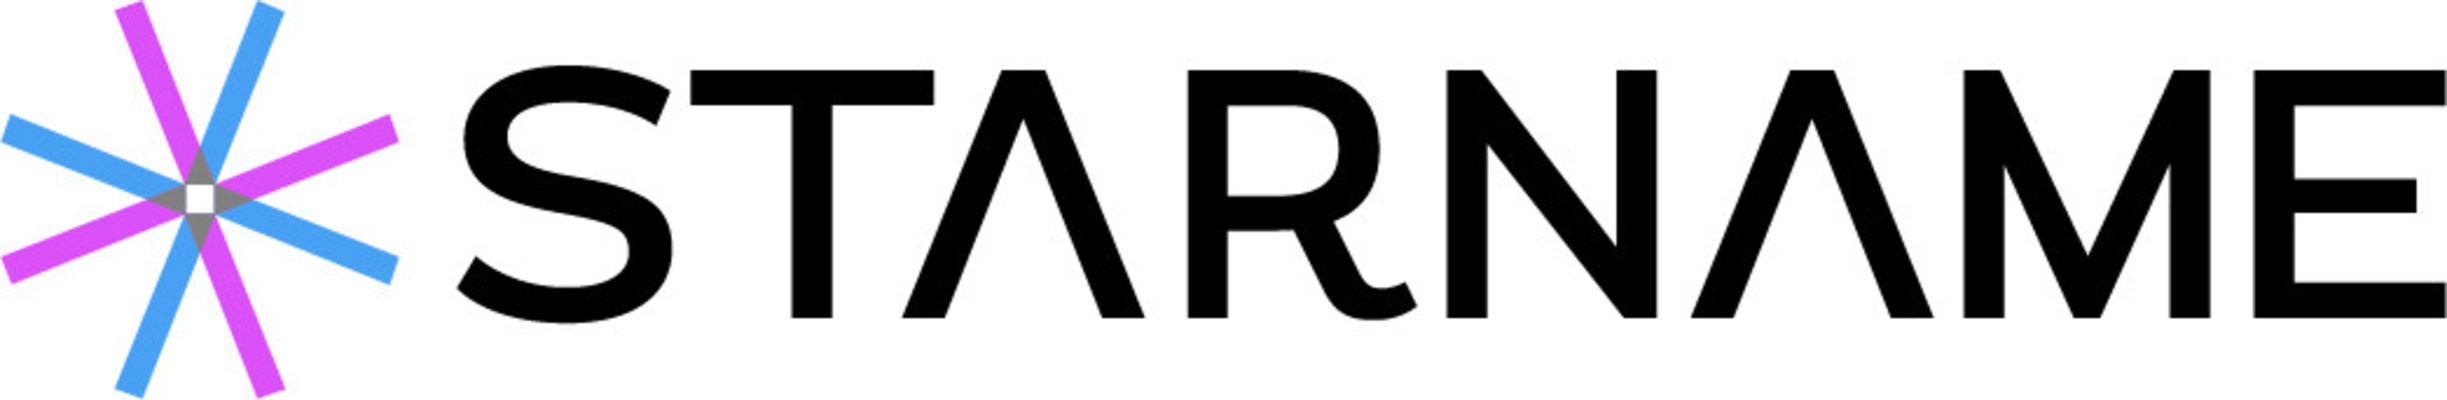 STARNAME Logo